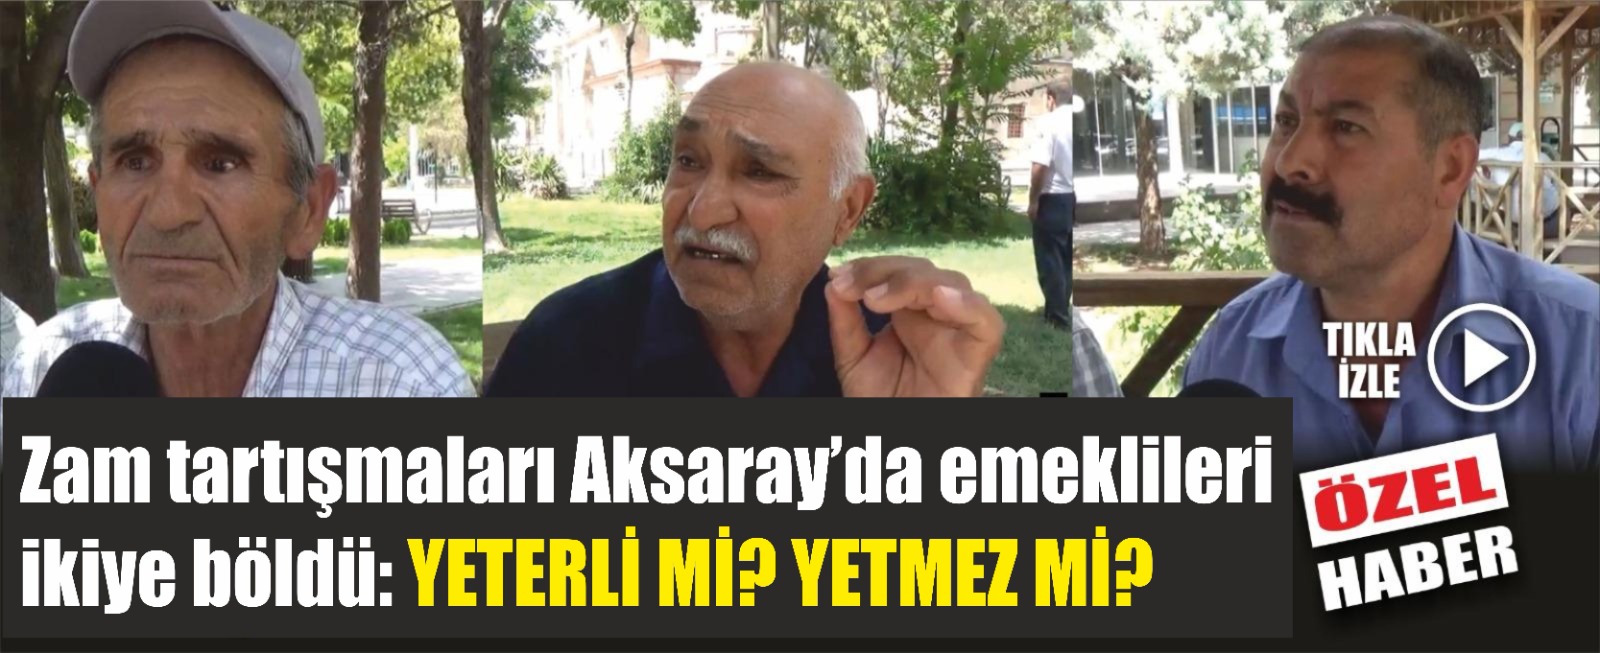 Zam tartışmaları Aksaray’da emeklileri ikiye böldü: Yeterli mi? Yetmez mi?